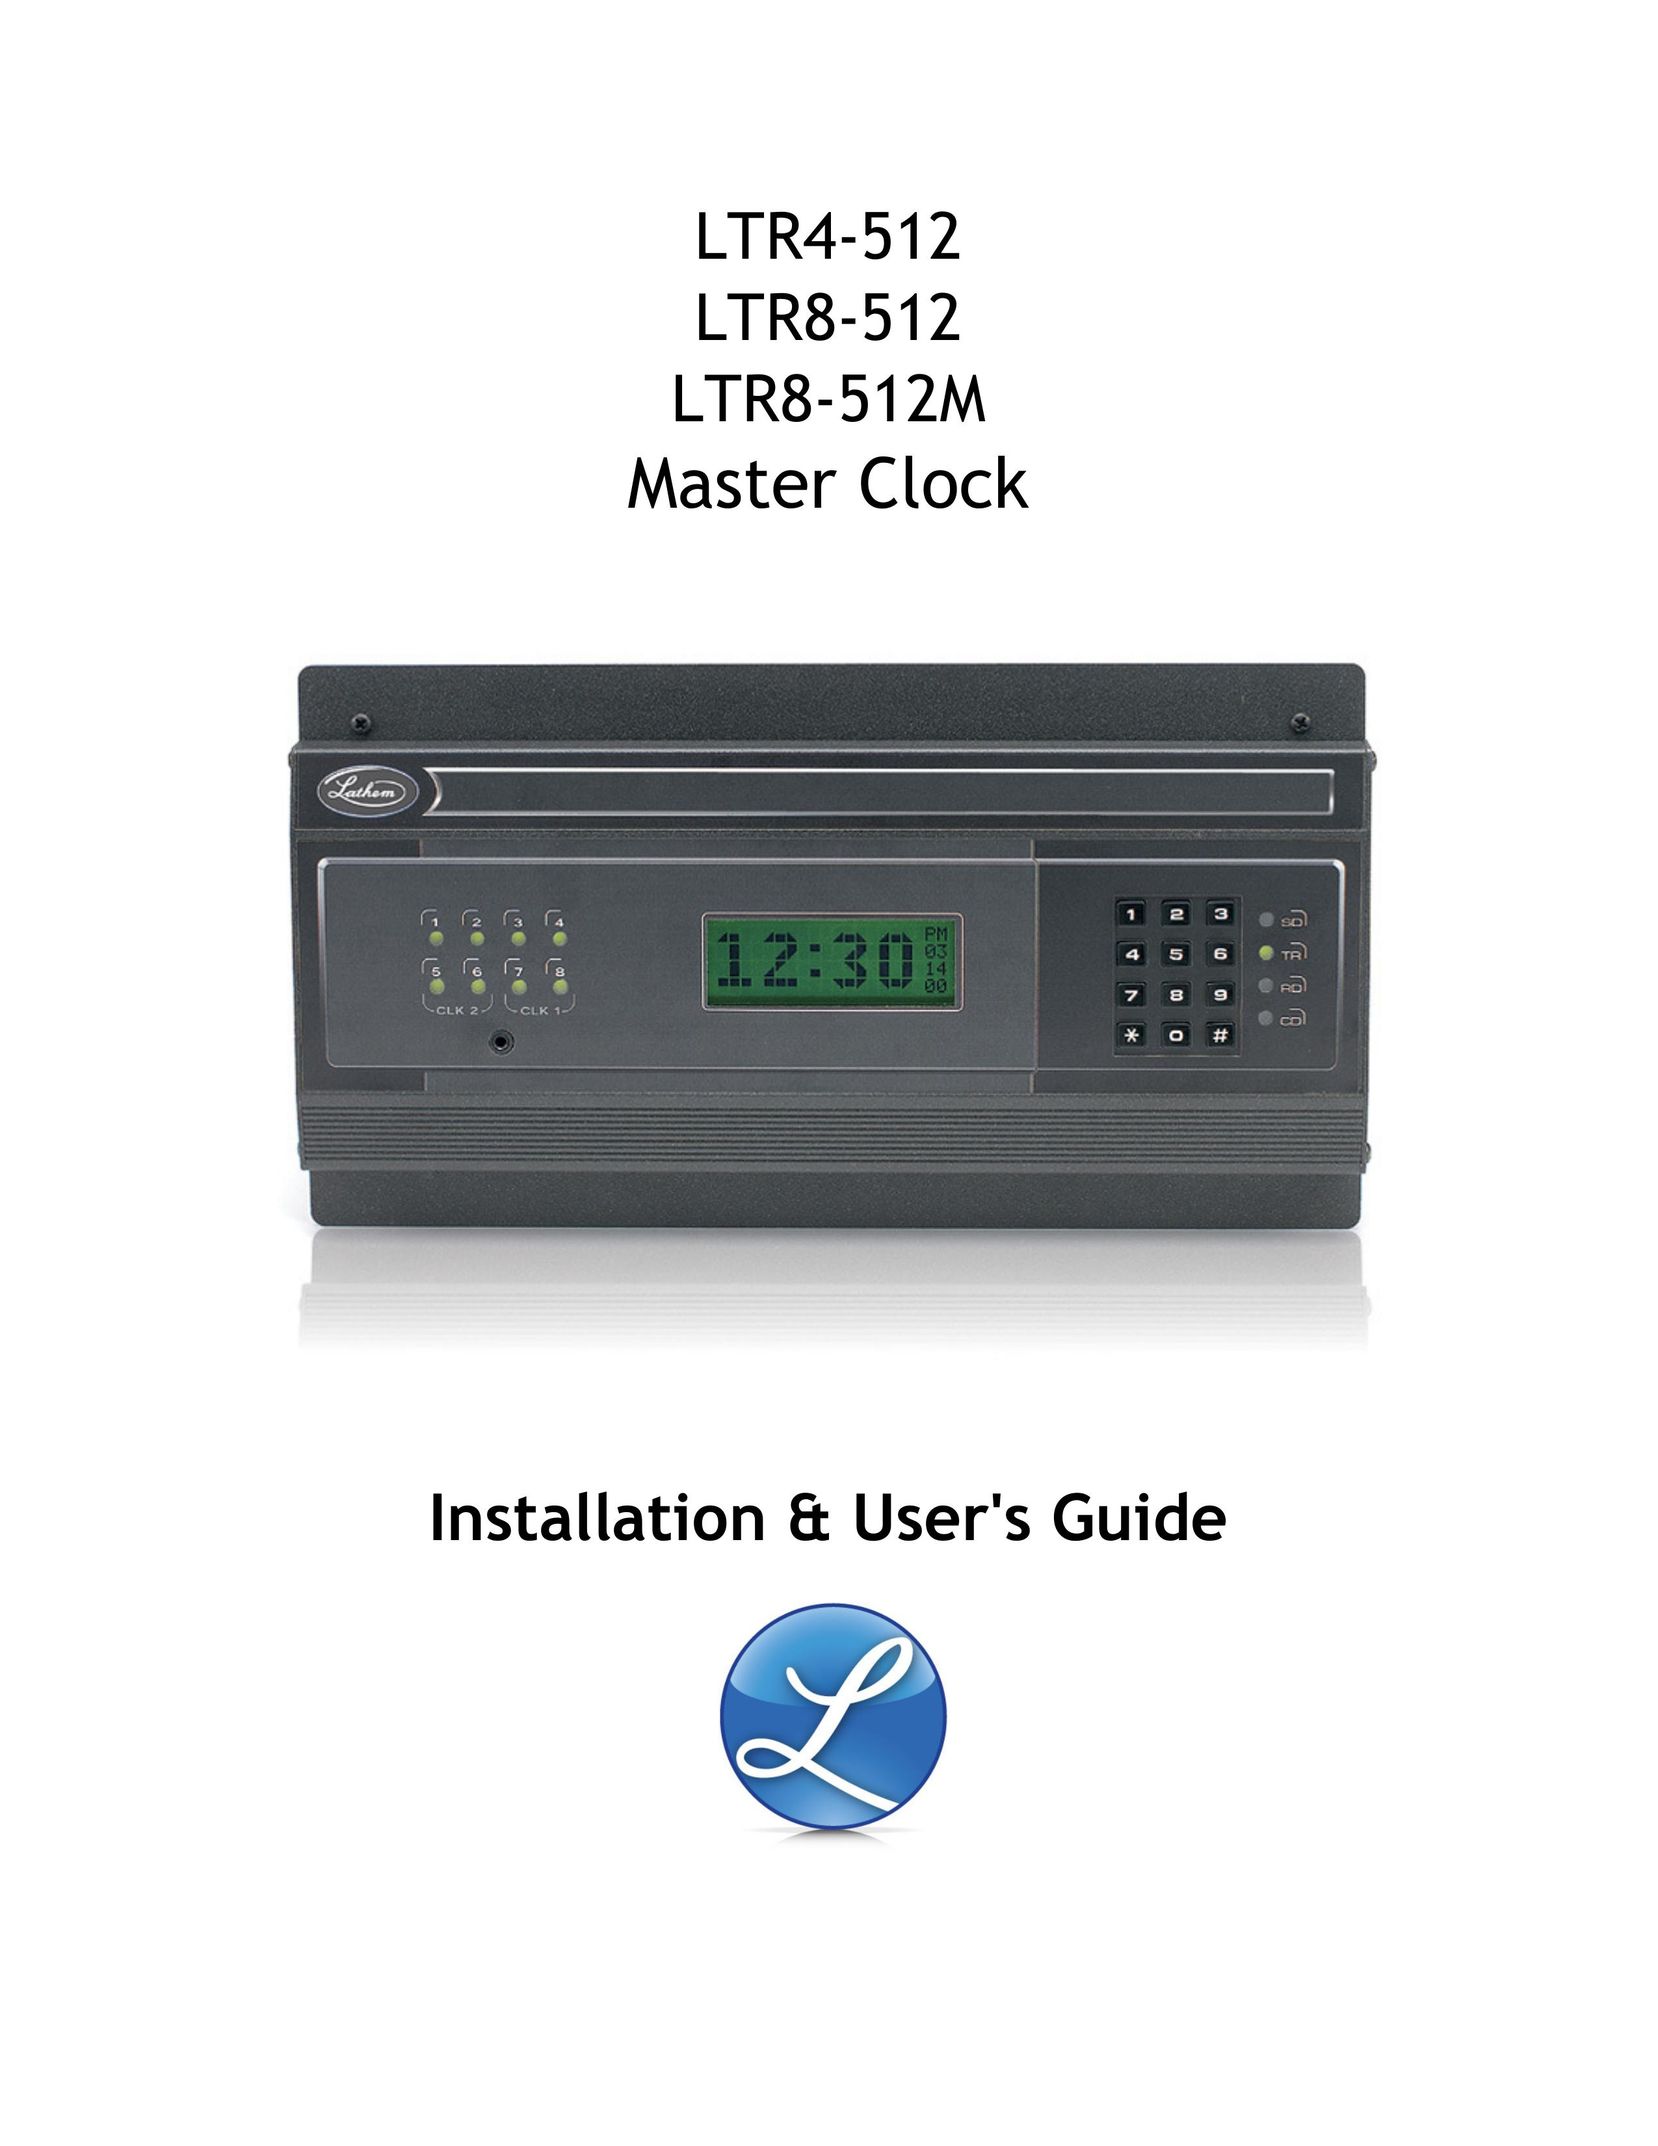 Master Lock LTR8-512 Clock User Manual